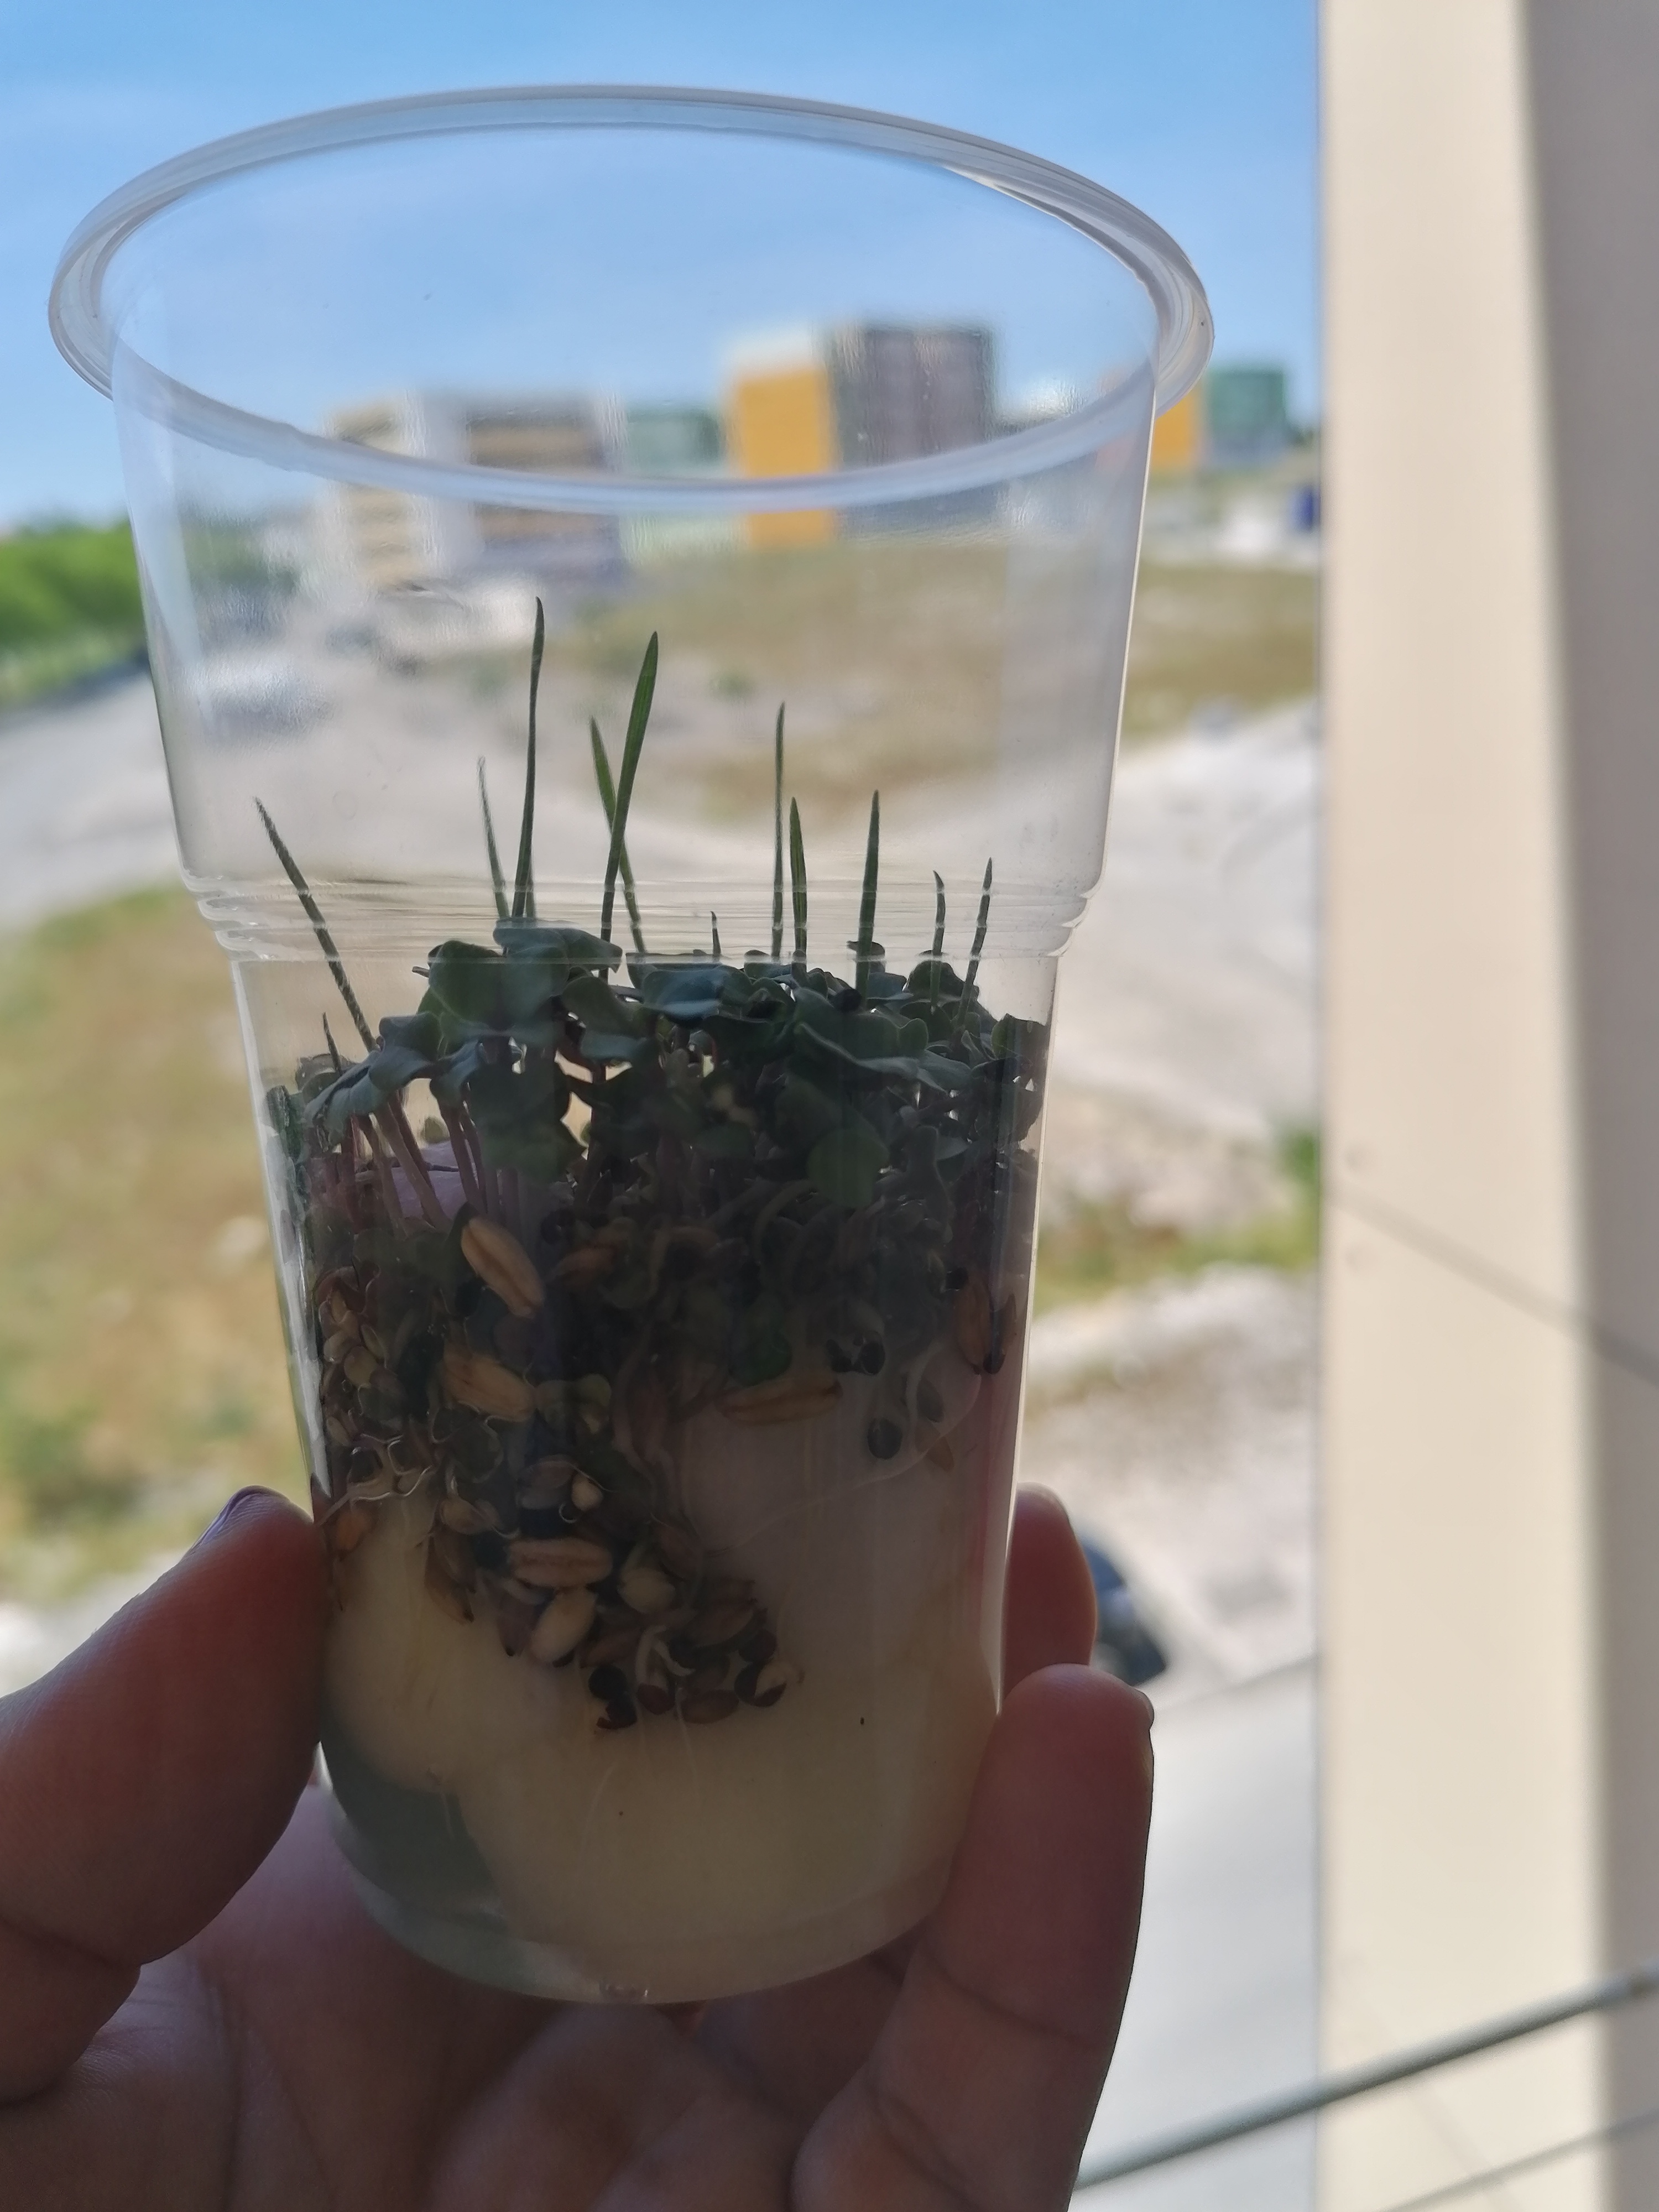 Evolução de sementes alpista semeadas num copo em algodão.
Evolução do crescimento de um morangueiro na minha varanda.